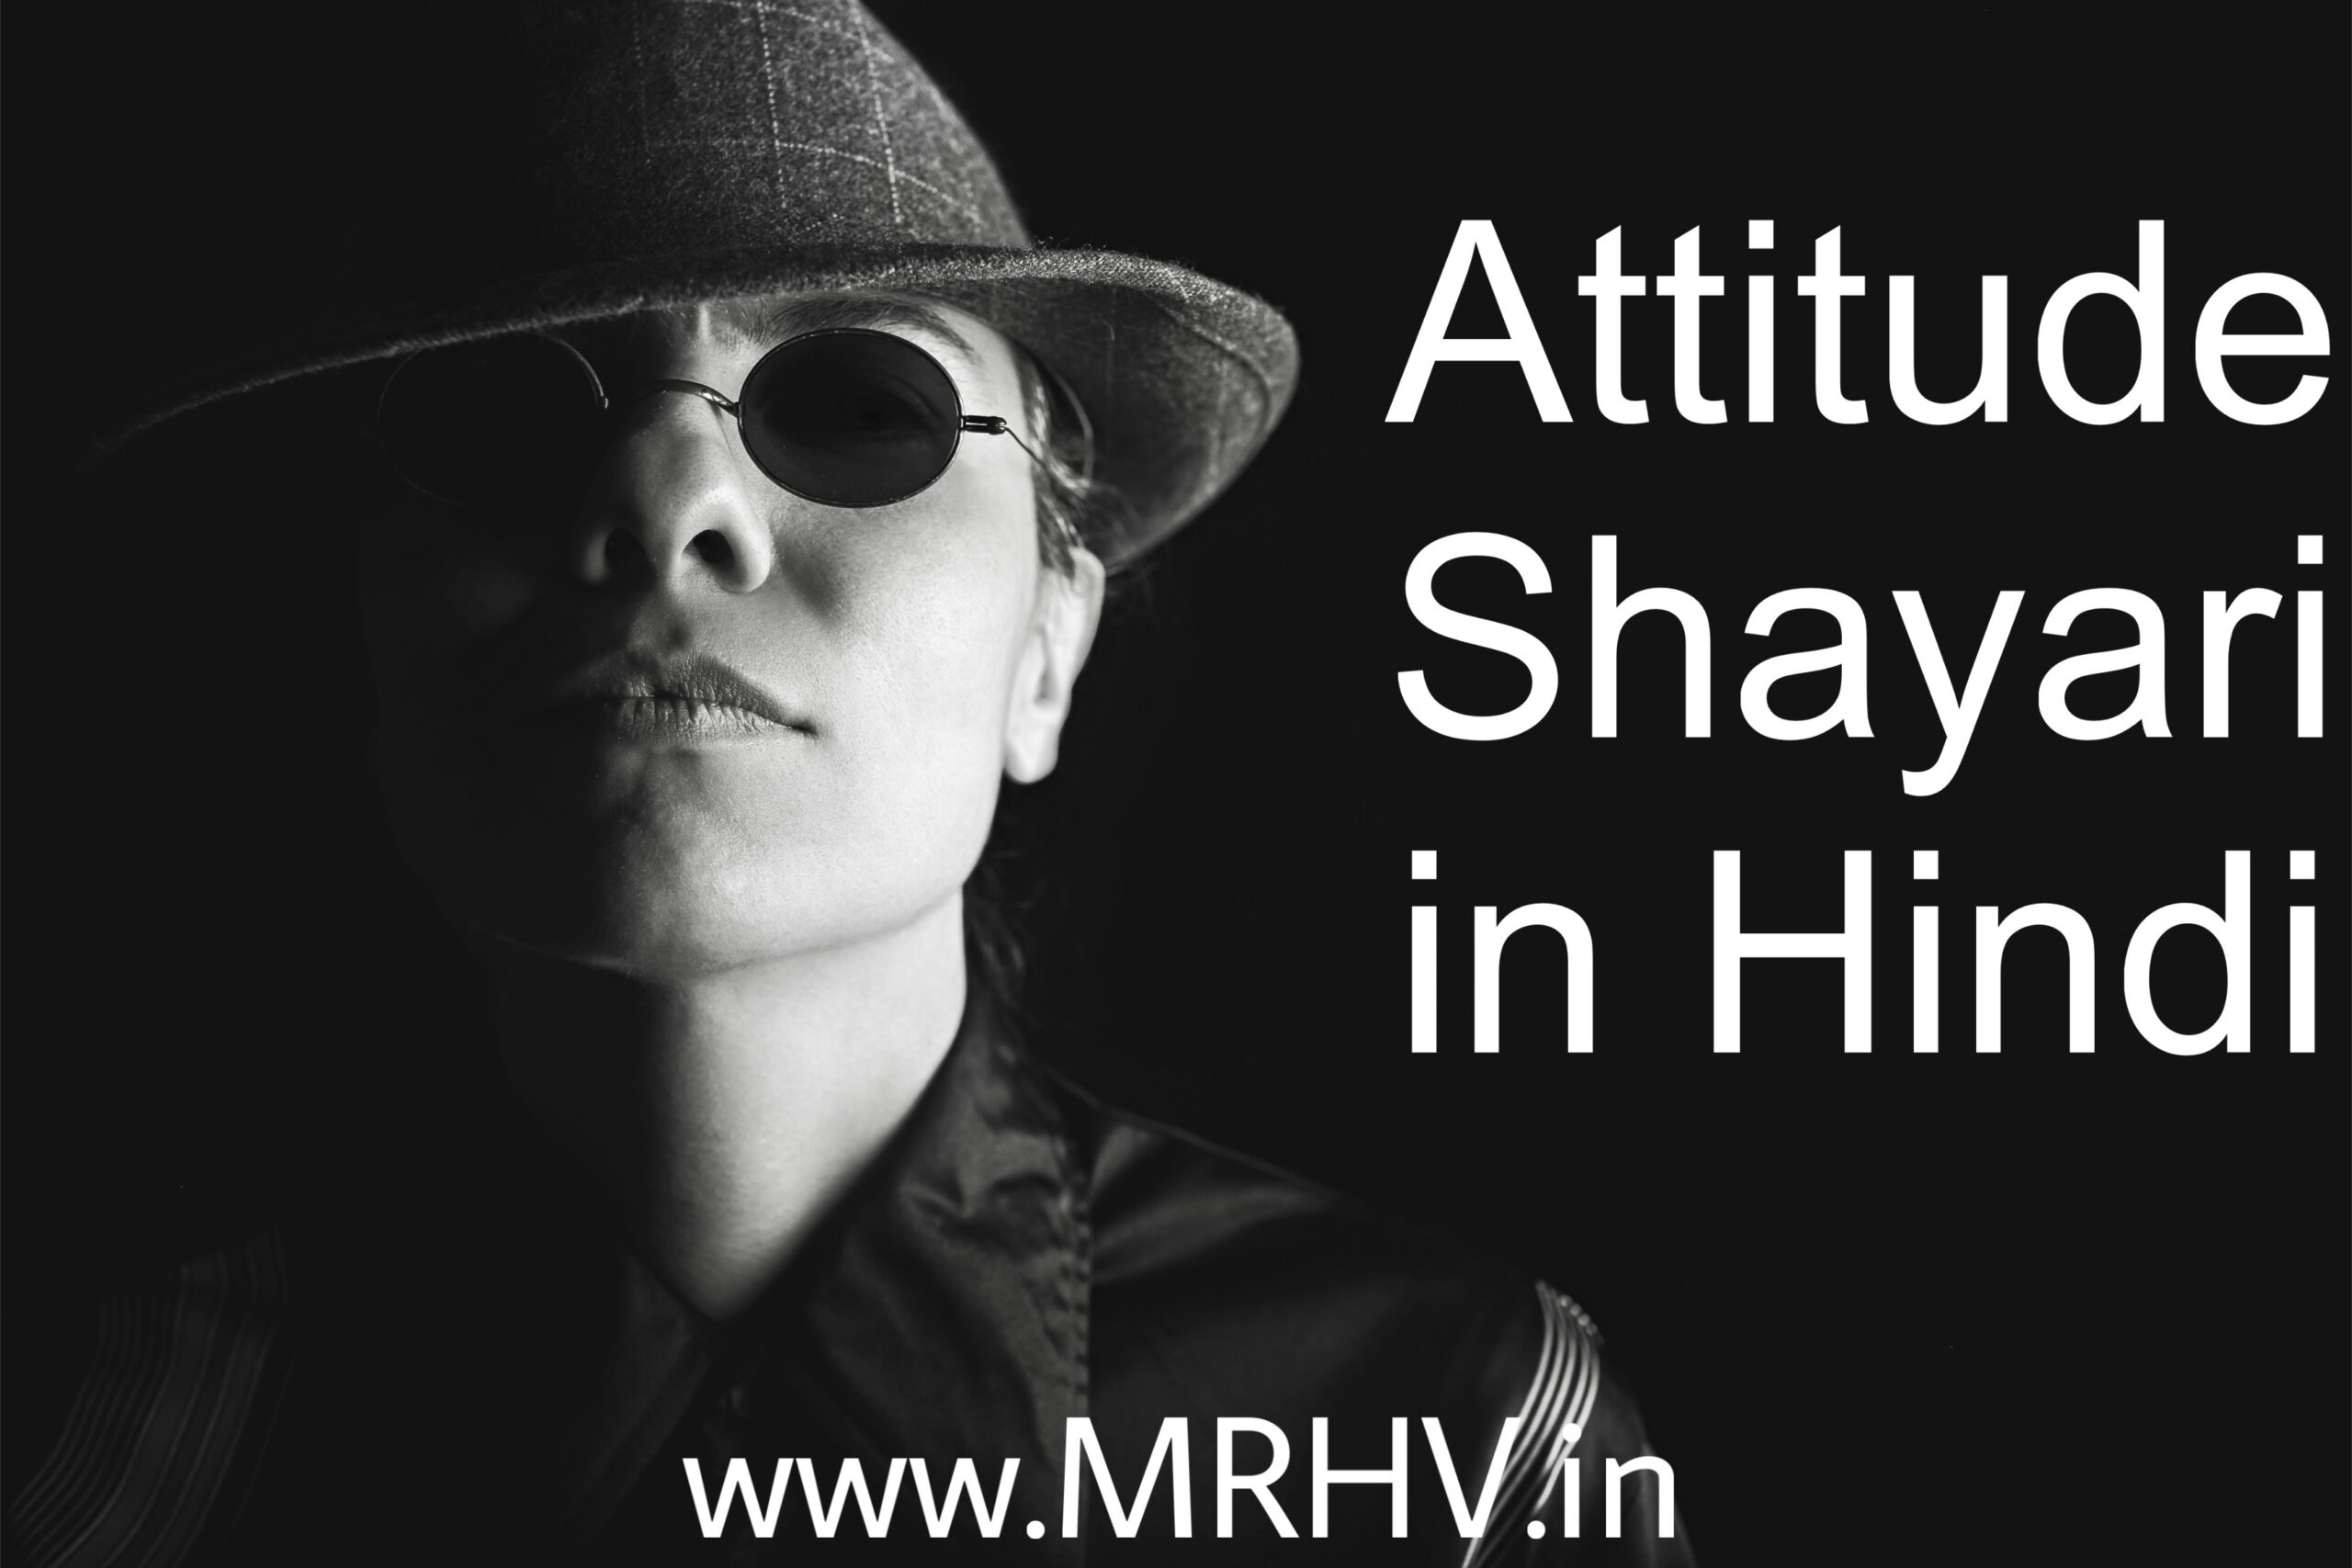 Best Attitude Shayari in Hindi - ऐटिटूड शायरी हिंदी में